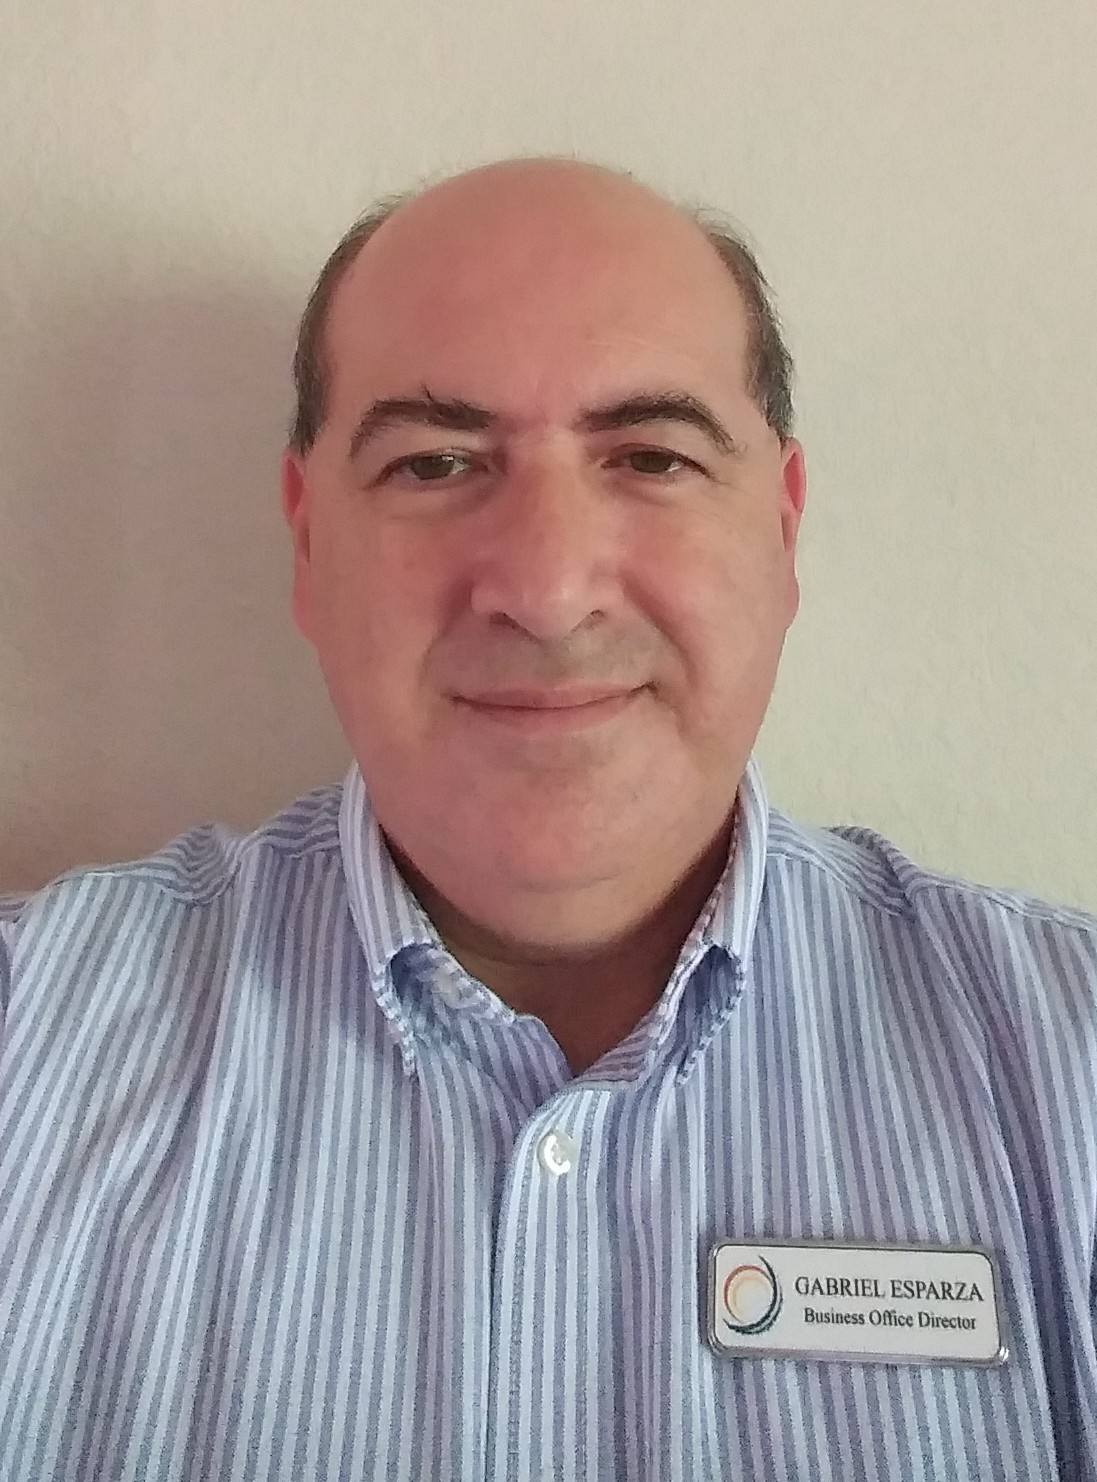 Gabriel Esparaza, Business Office Director, Solstice at El Paso